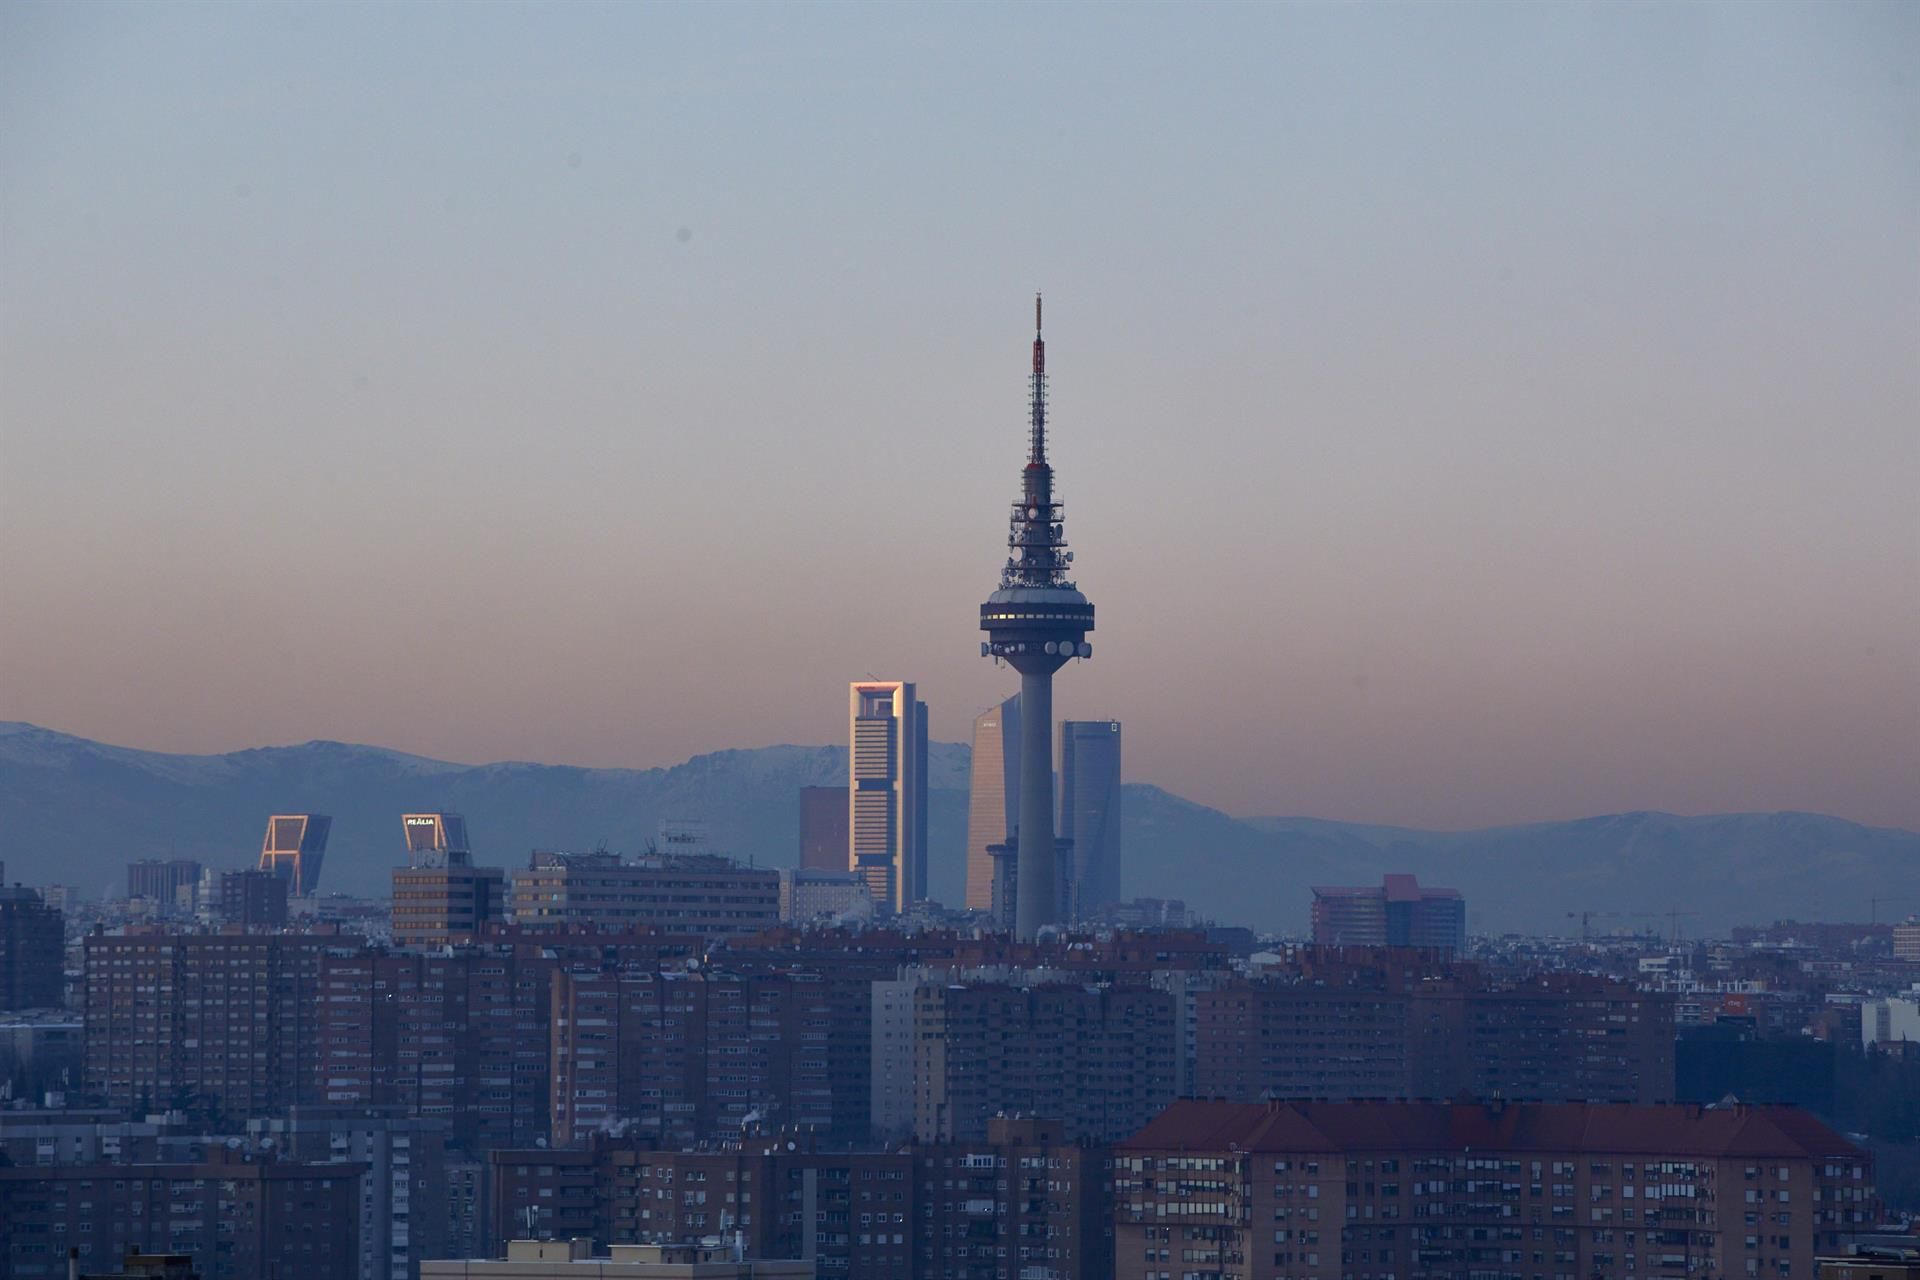 Capa de contaminación sobre Madrid. La contaminación por partículas del aire y la hipertensión / Foto: Jesús Hellín - EP